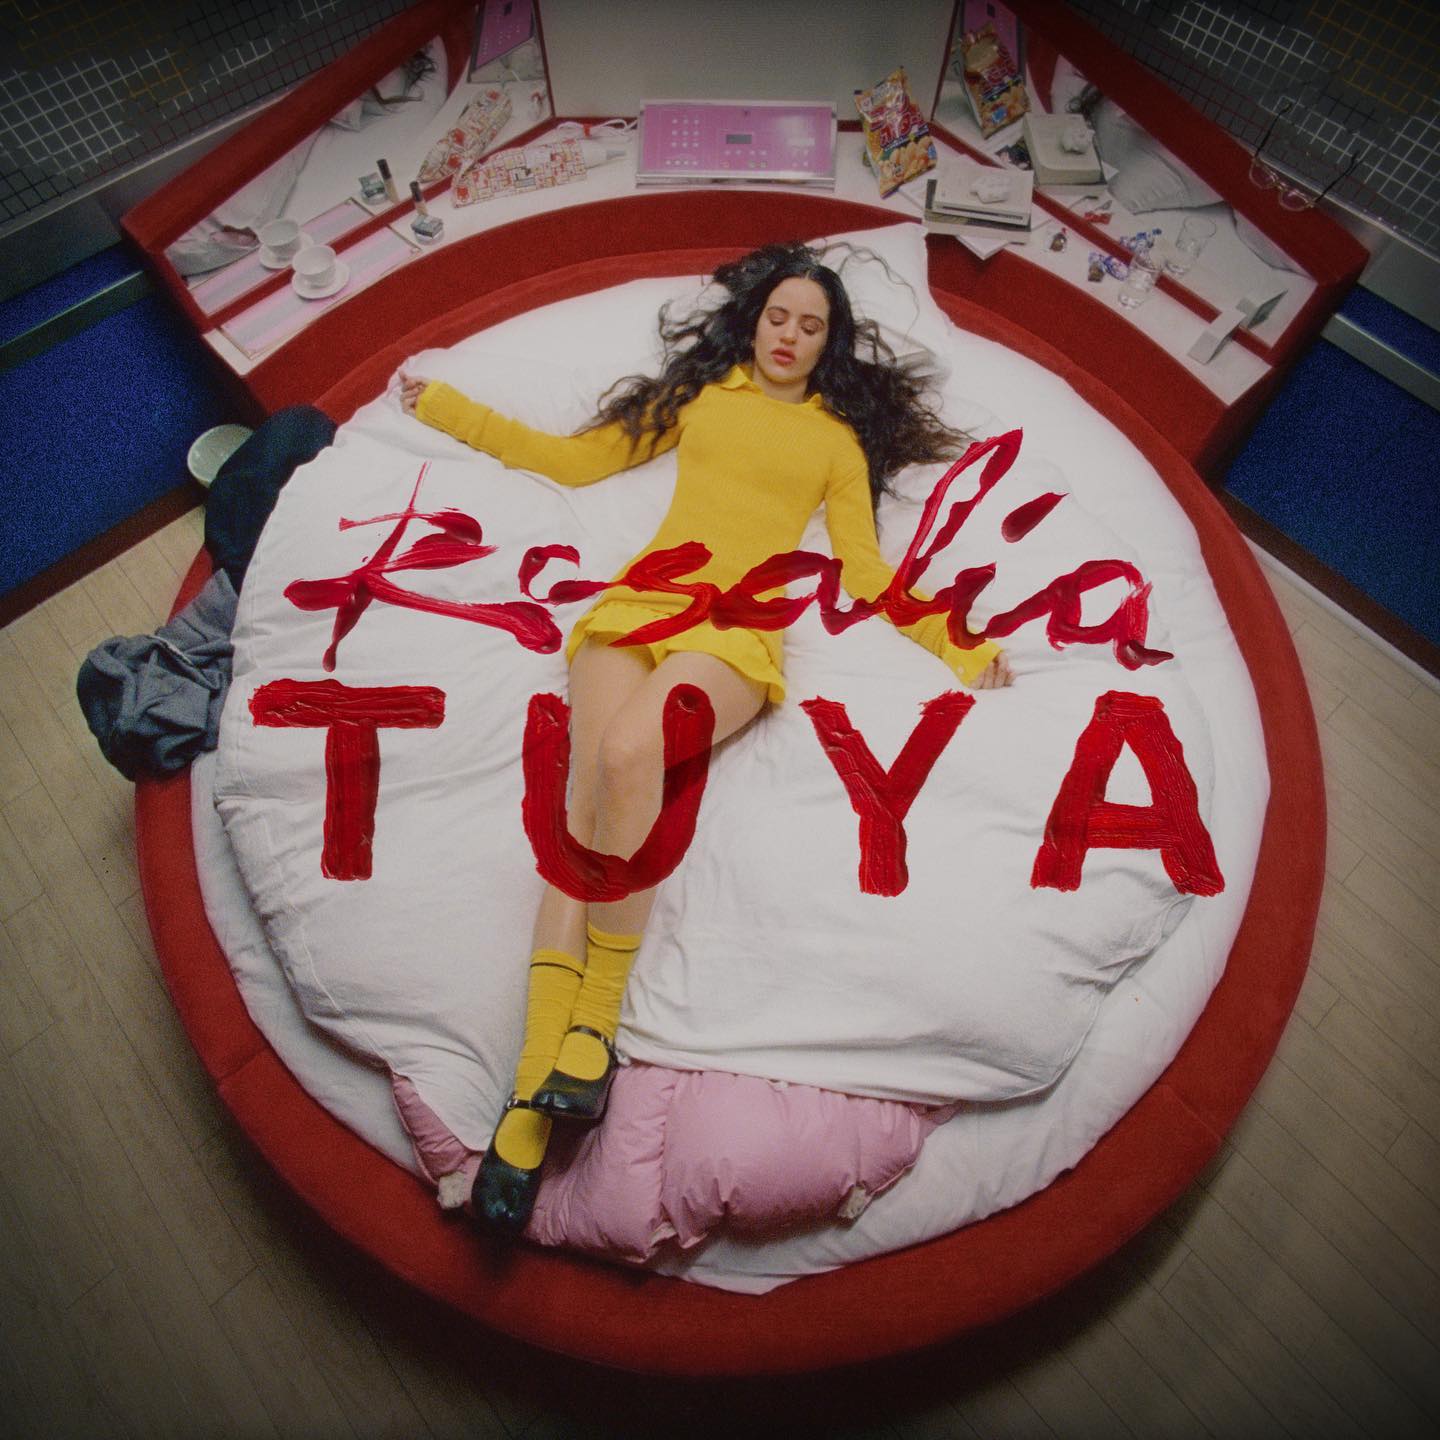 Tuya" es el primer single de R4, el próximo disco de Rosalía